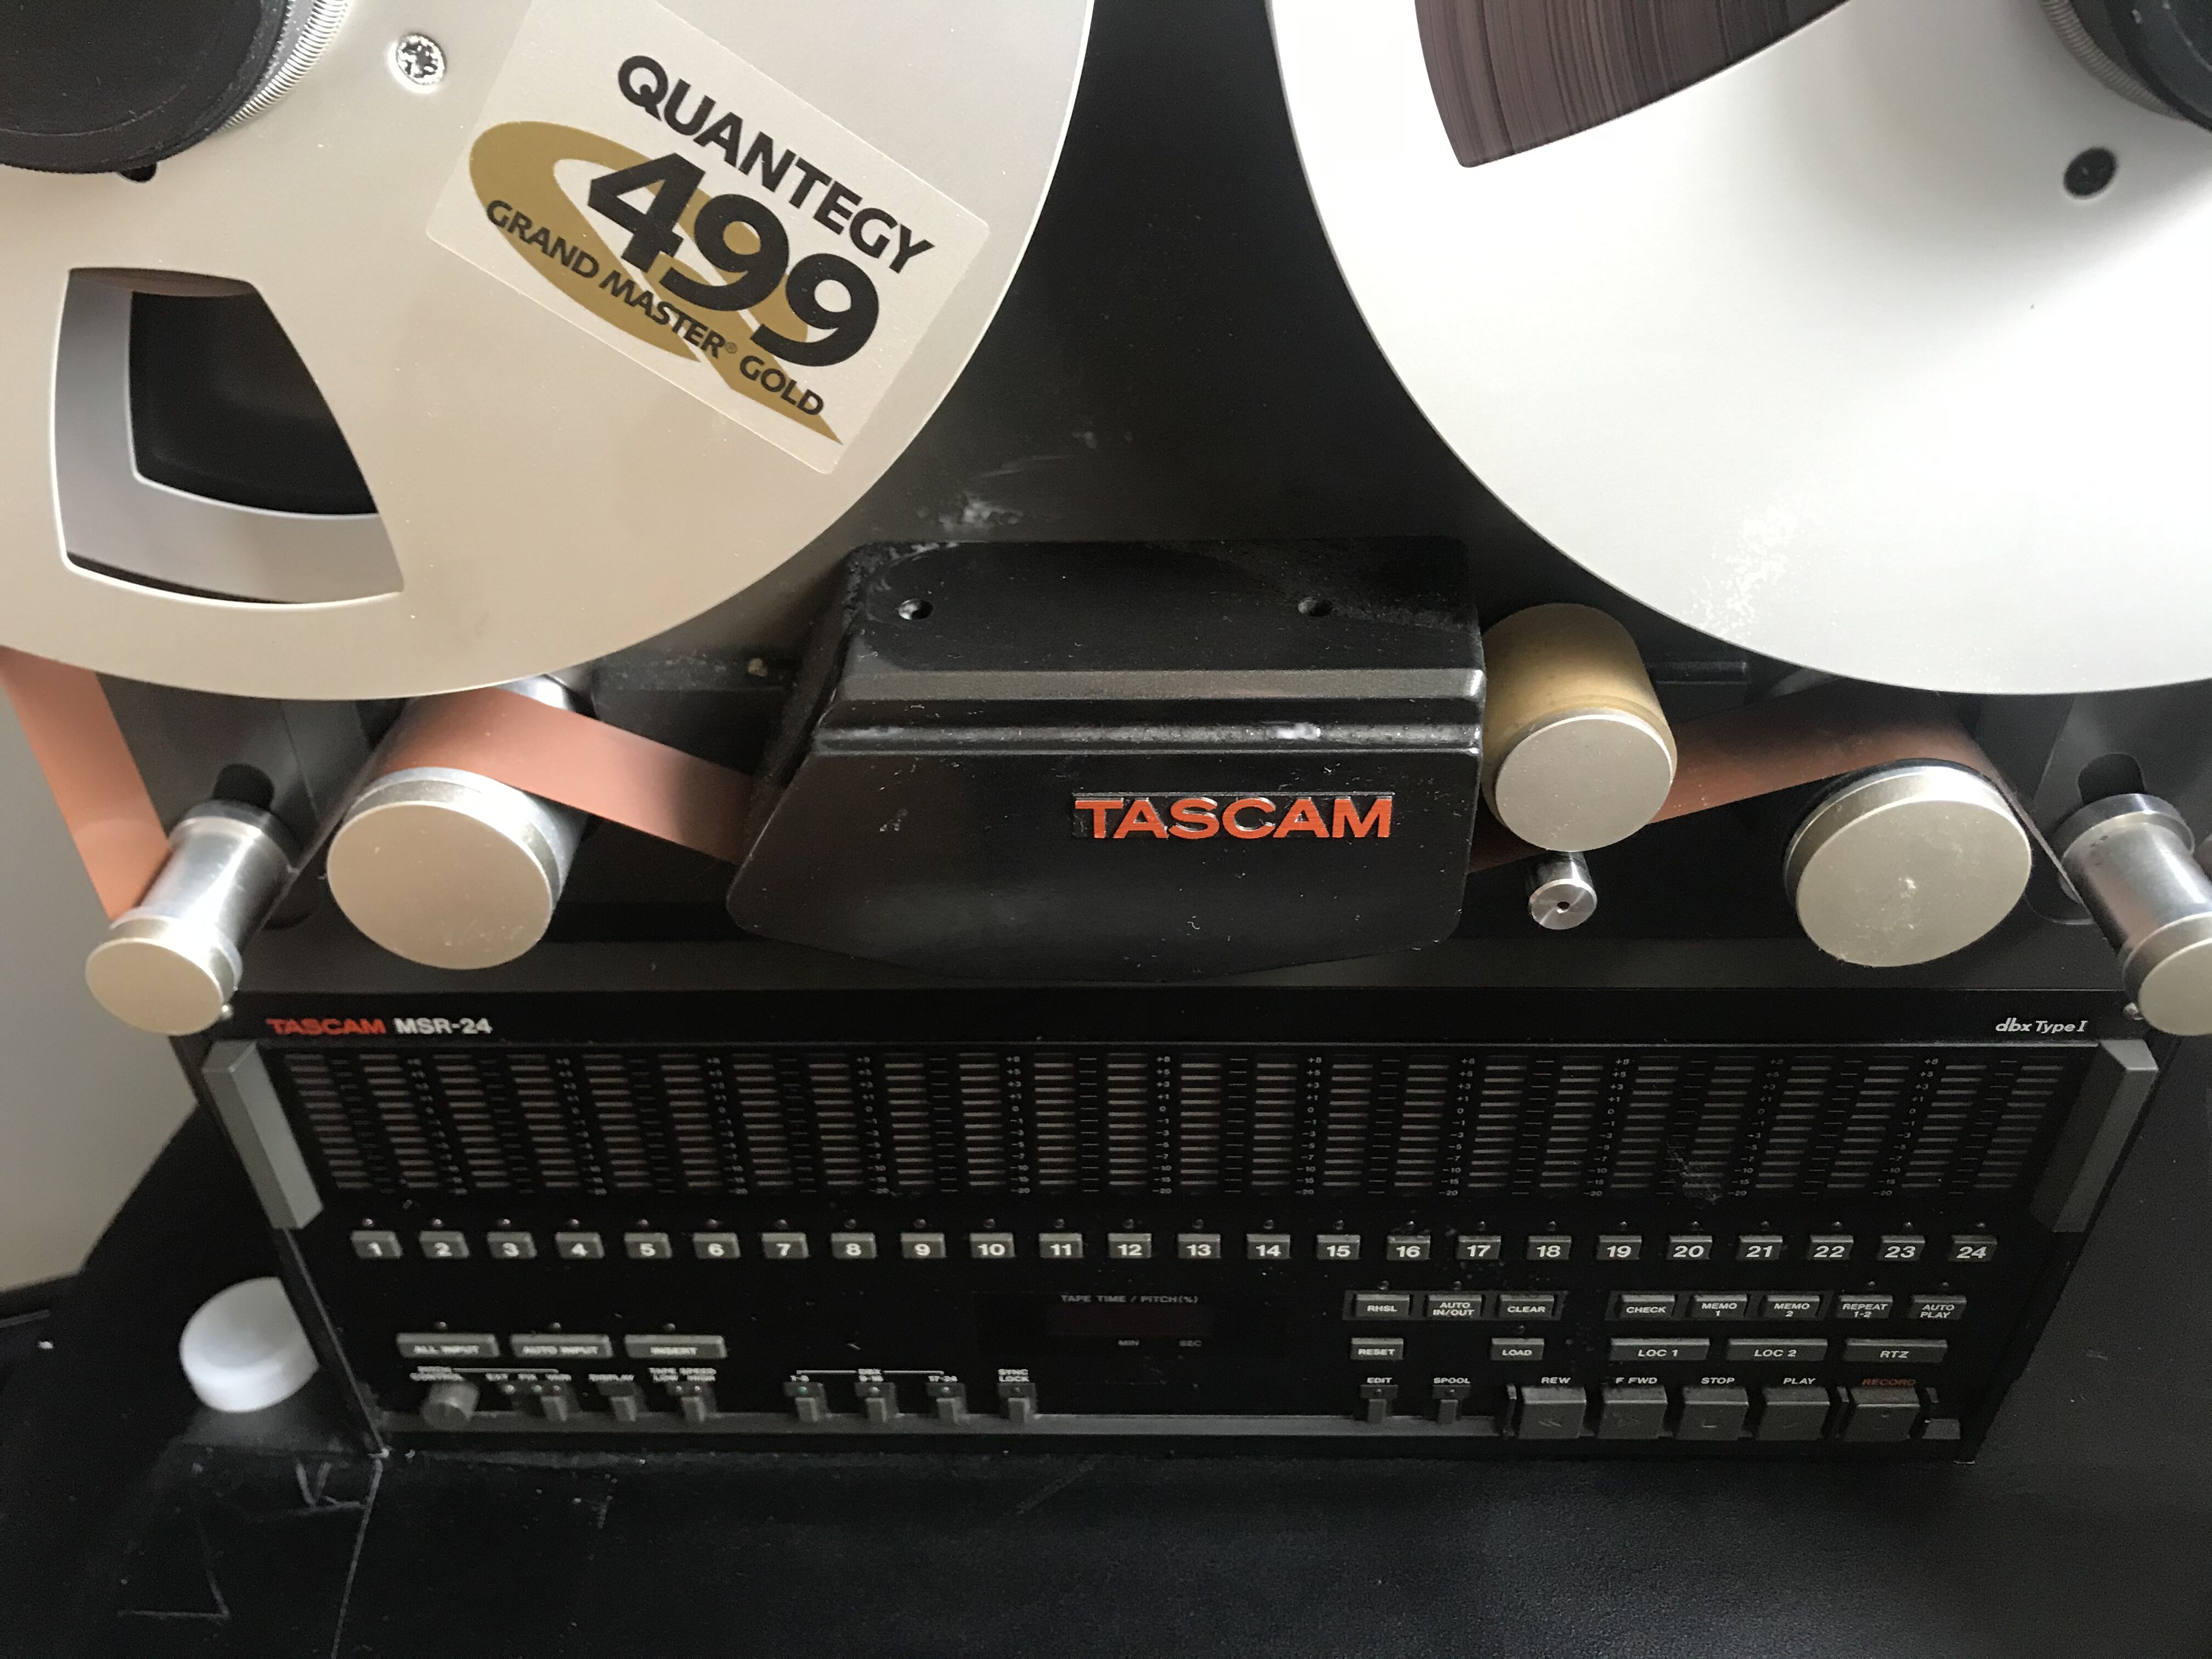 MSR 24 - Tascam MSR 24 - Audiofanzine